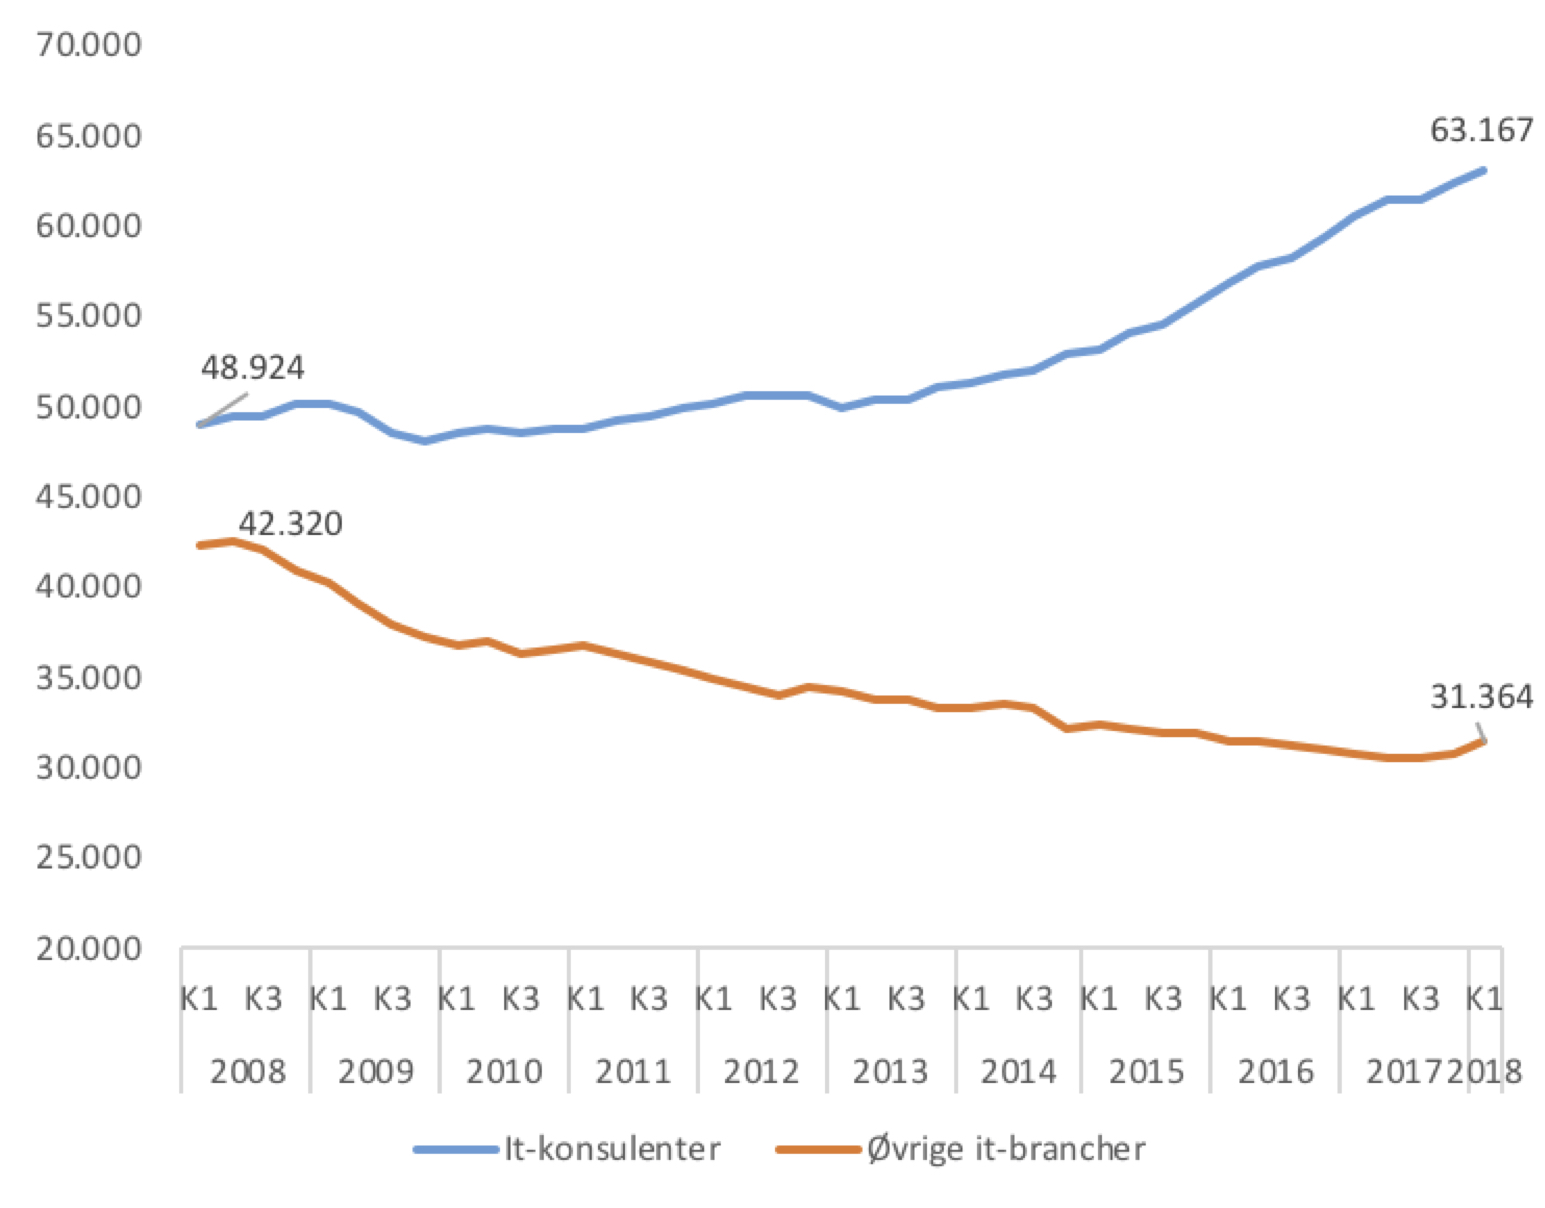 Figur 2: Udvikling i antal job i it-sektoren opgjort på delbrancher 2008K1-2018K1